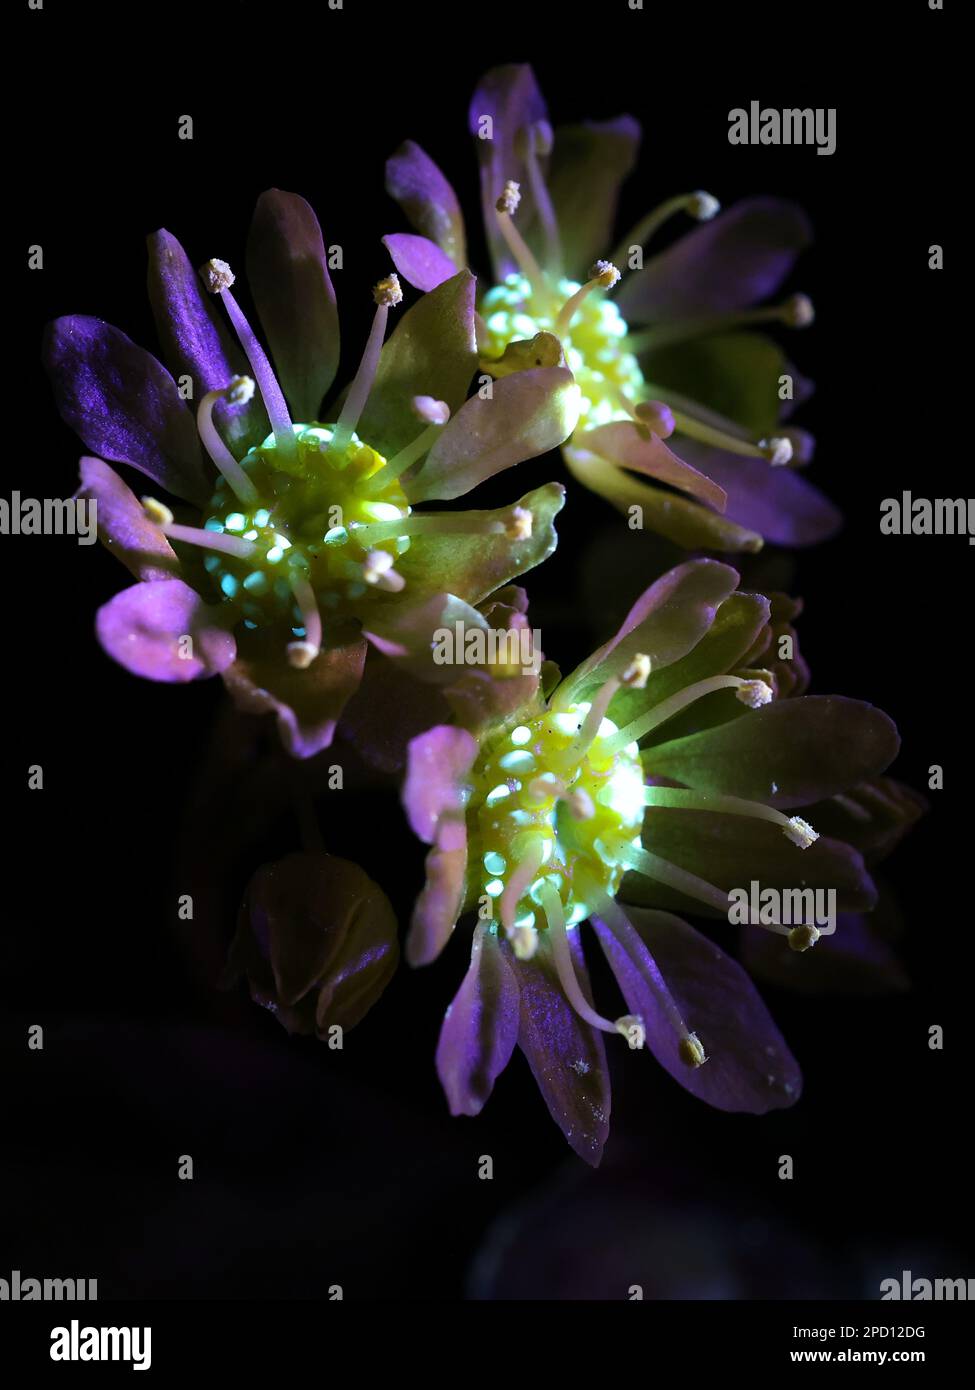 Fleurs fluorescentes de l'érable norvégien Acer platanoides, photographiées à la lumière ultraviolette (365 nm) Banque D'Images